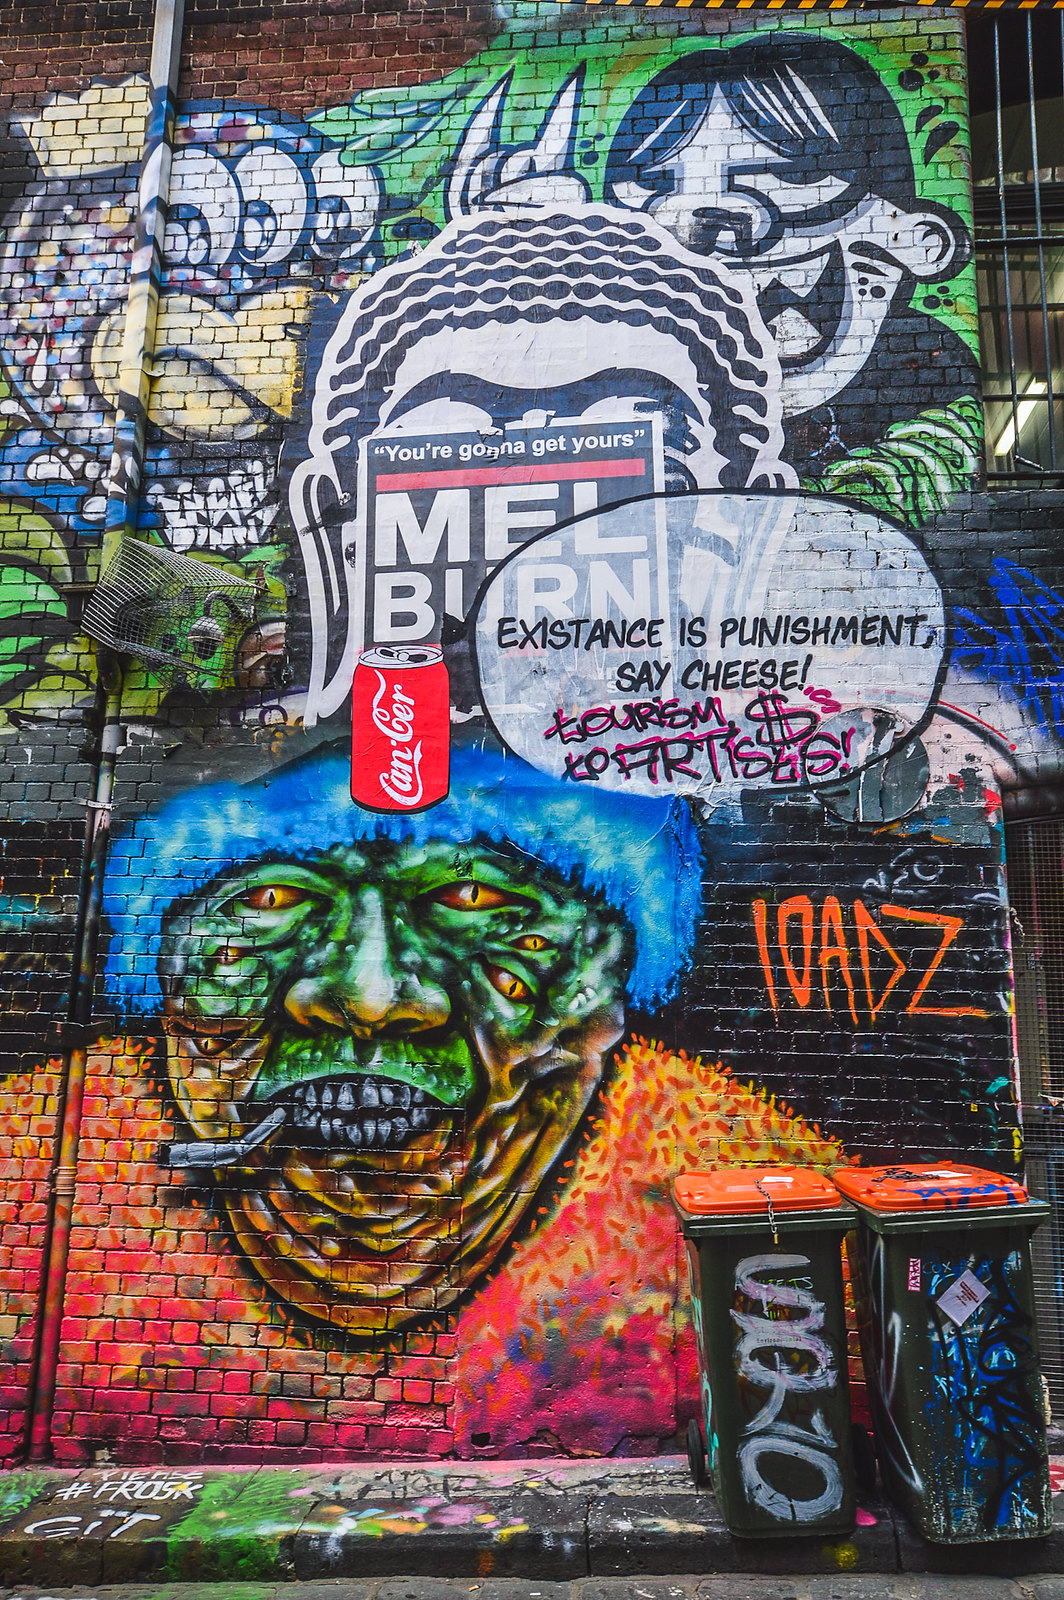 Melbourne Hossier Lane Street Art 2015